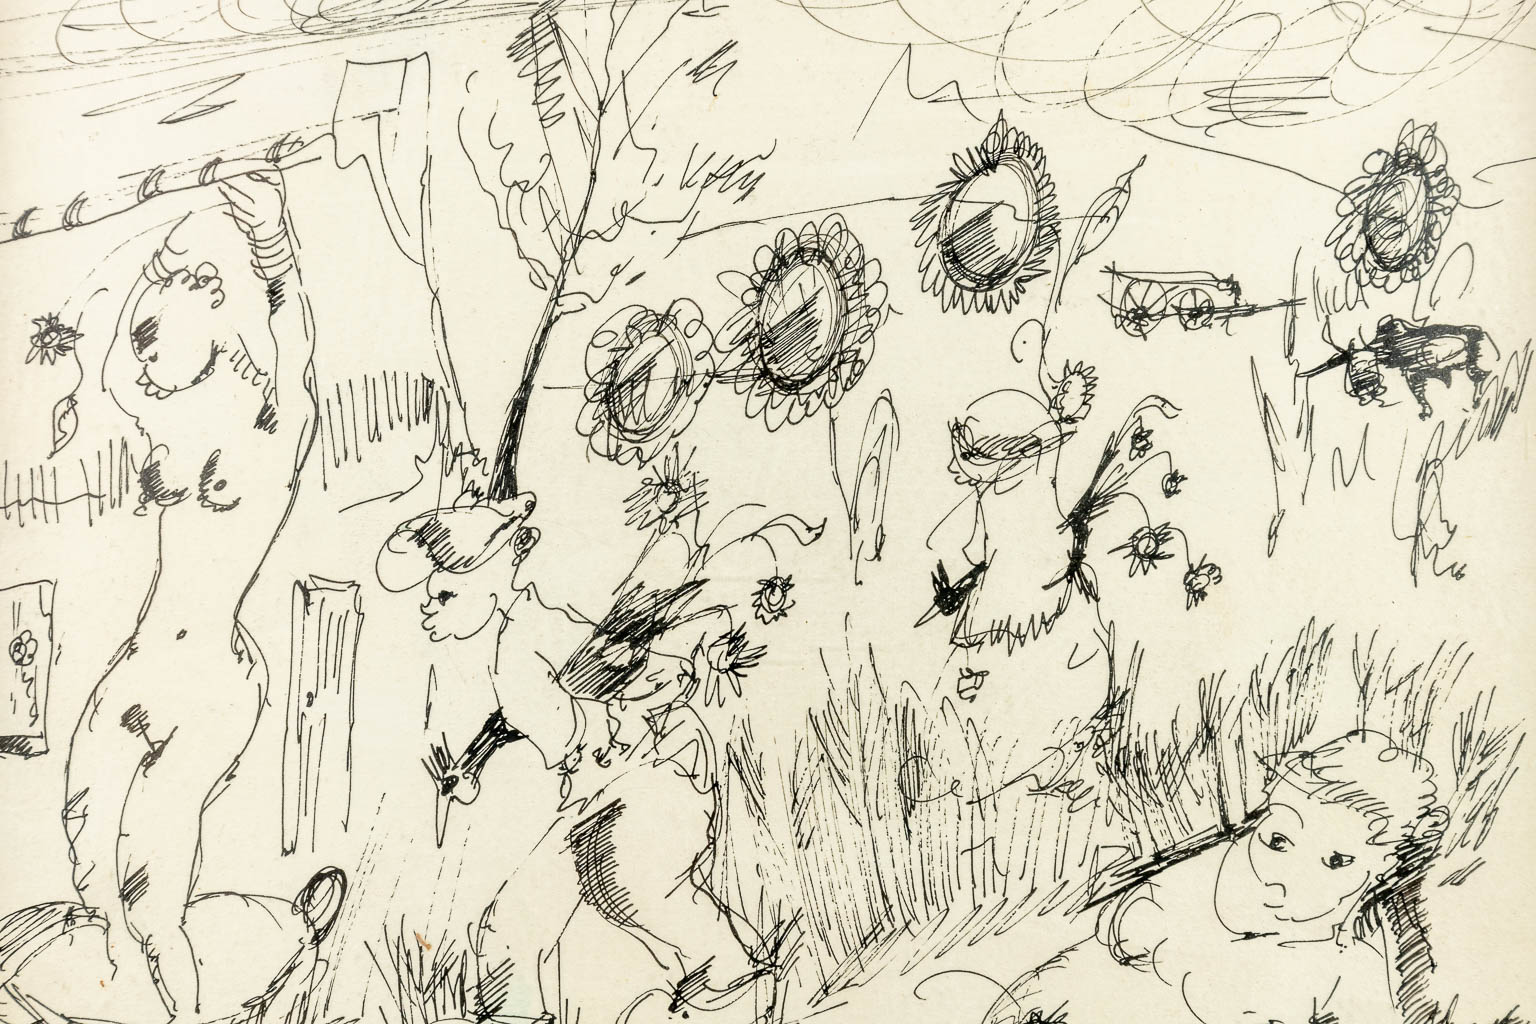 Frans CLAERHOUT (1919-2006) 'Twee pentekeningen' (23 x 25 cm)